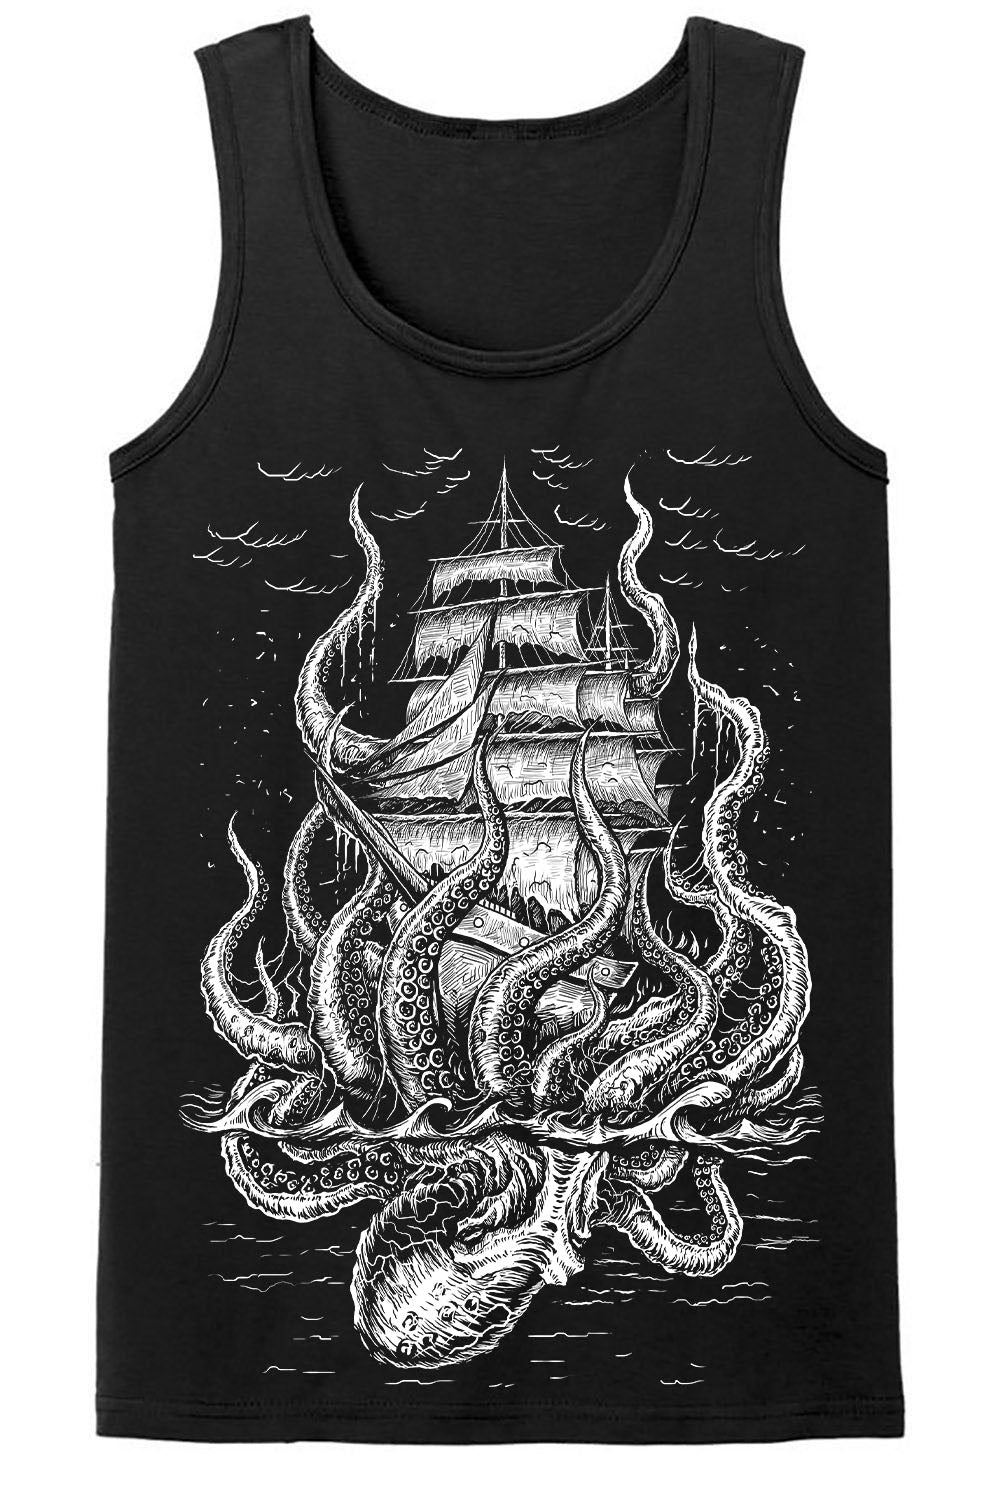 Release the Kraken T-shirt